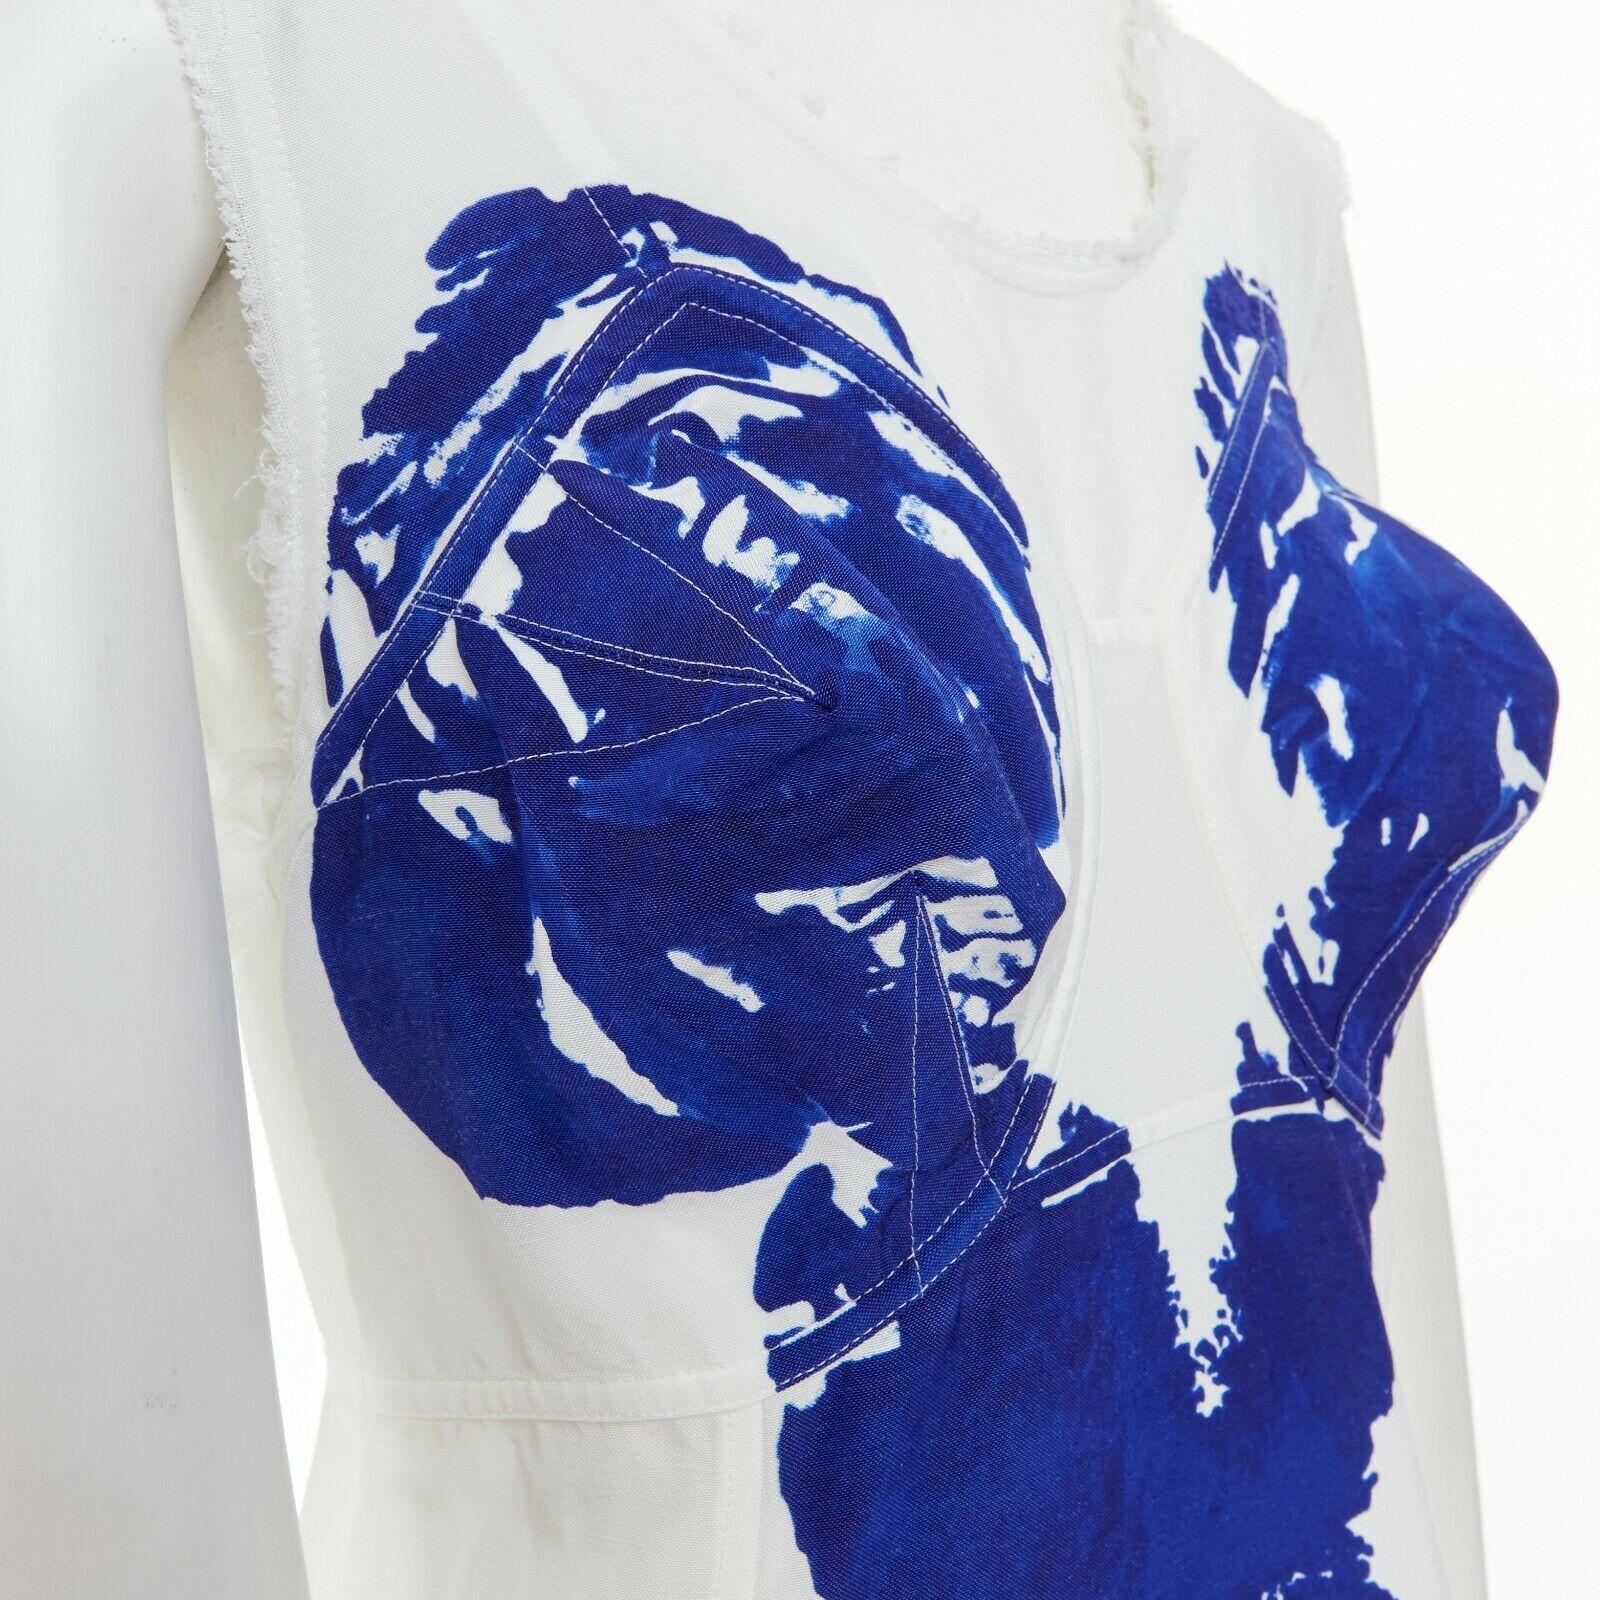 Women's runway CELINE PHOEBE PHILO SS17 Yves Klein body print white frayed dress FR36 S